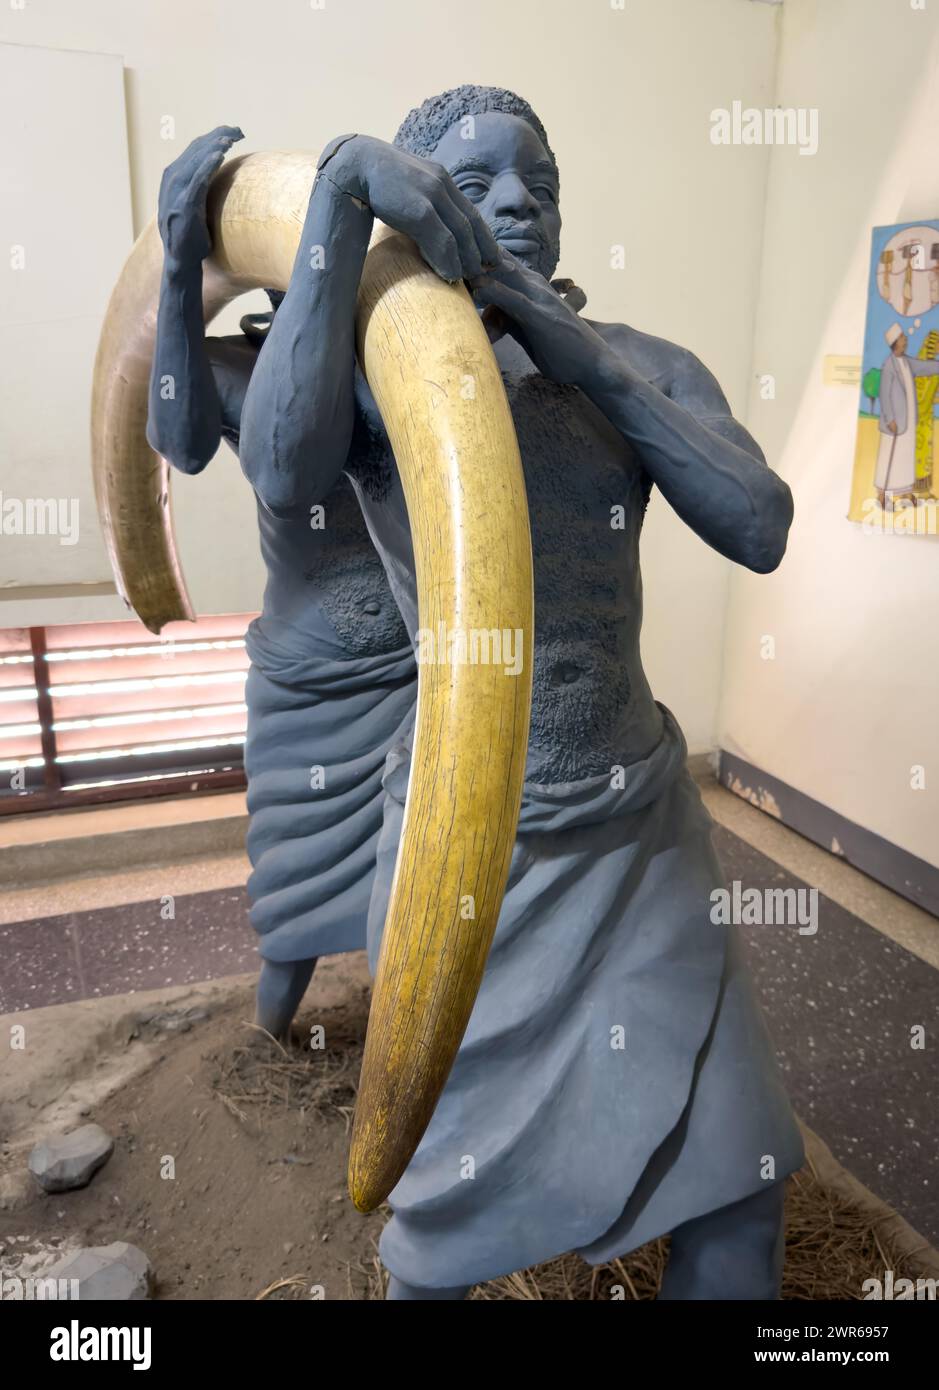 Eine Ausstellung mit afrikanischen Trägern oder Sklaven, die einen riesigen elfenbeinfarbenen Elefantenzahn tragen, Nationalmuseum, dar es Salaam, Tansania Stockfoto